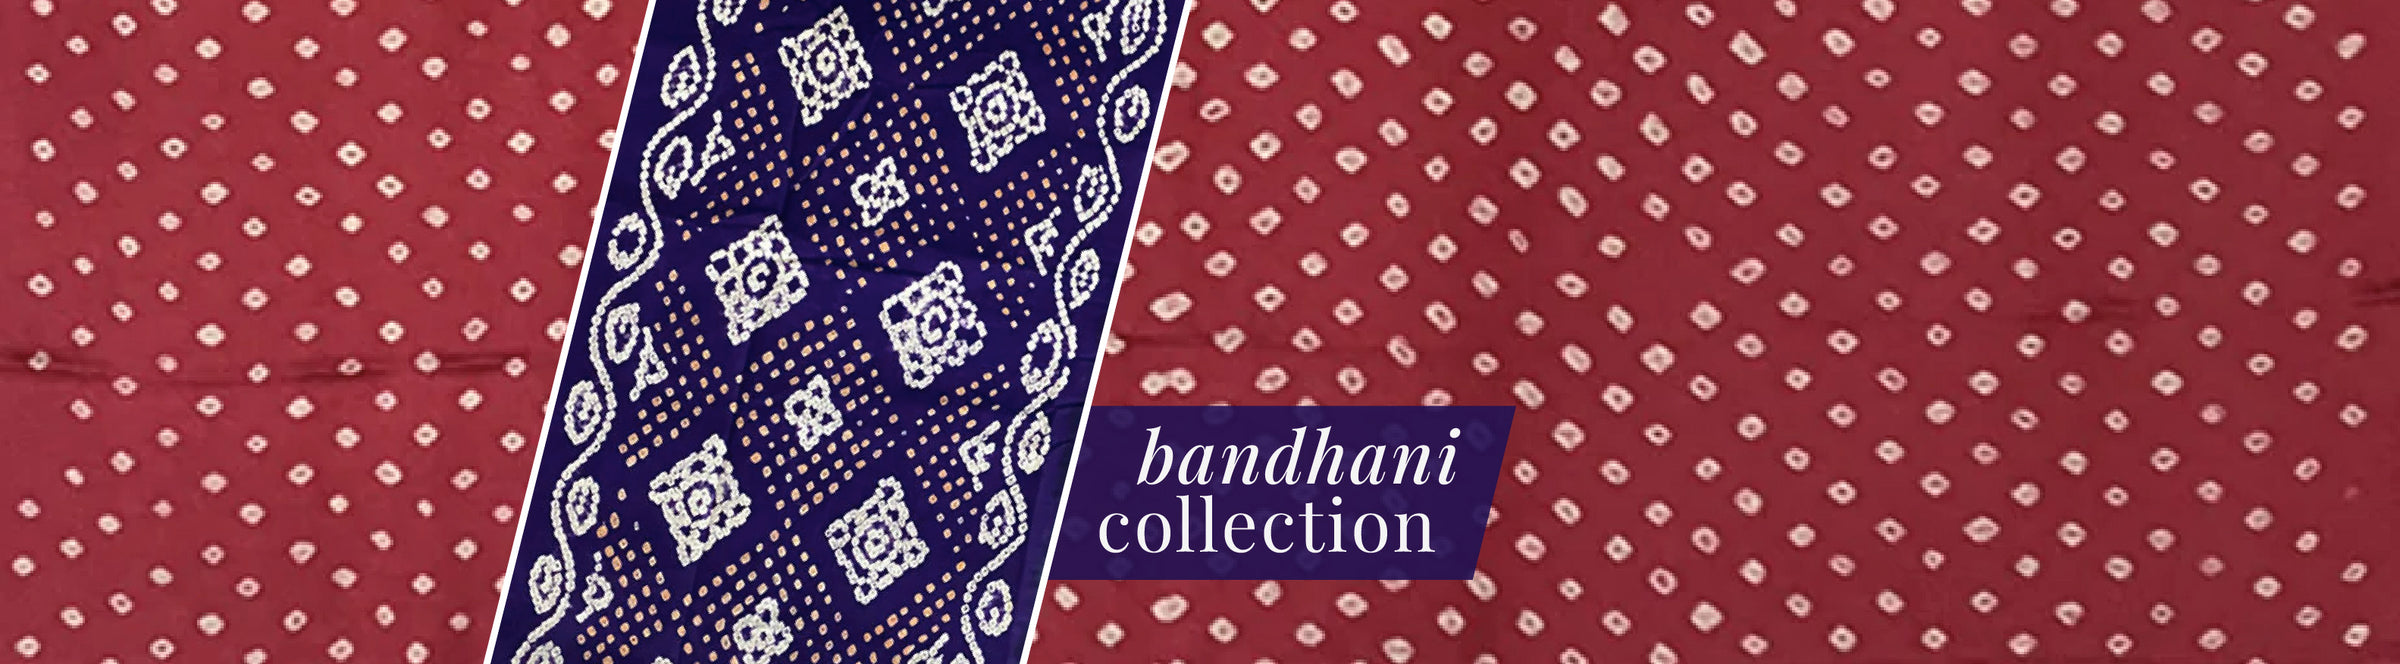 Bandhani collection